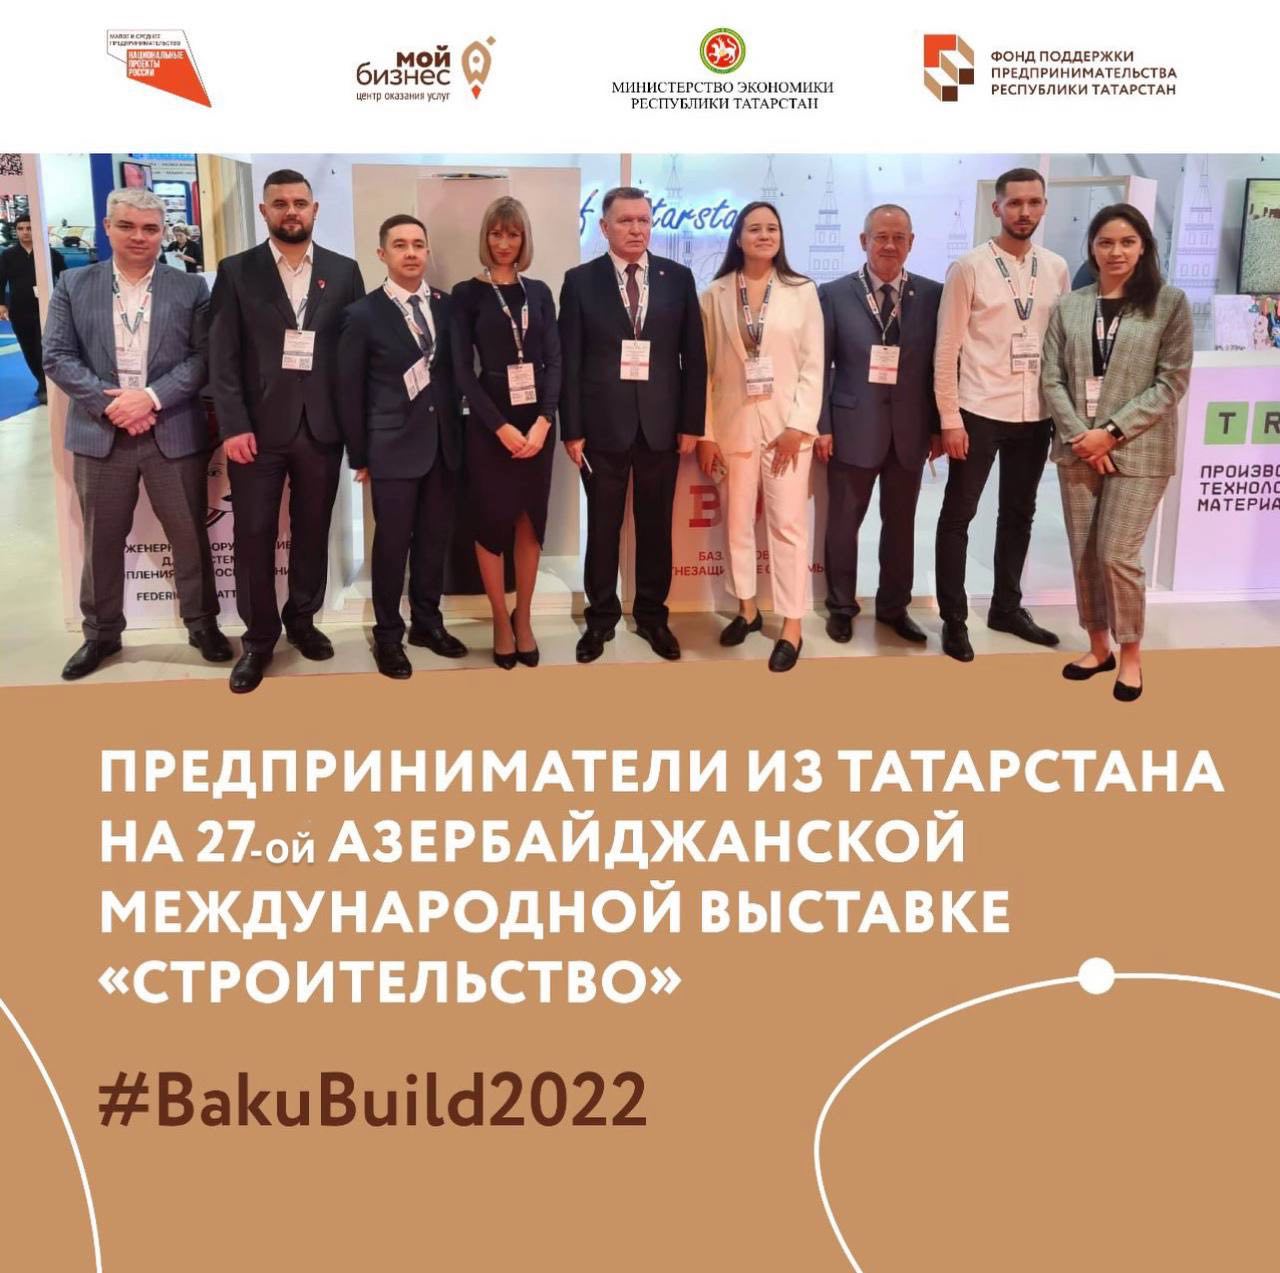 Предприниматели Татарстана приехали в Азербайджан на 27-ю Международную выставку «Строительство» — BAKUBUILD.